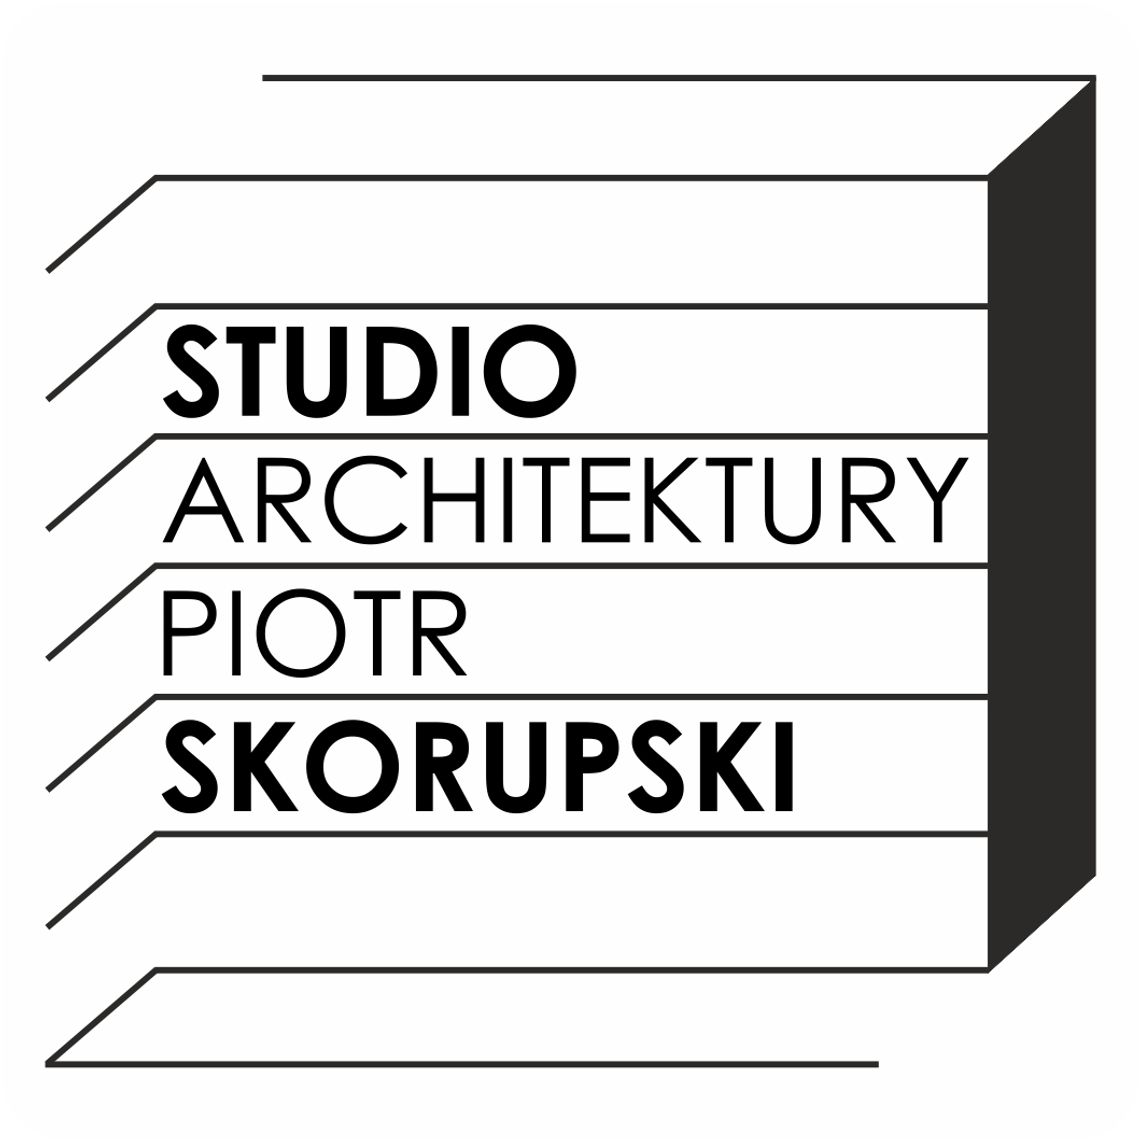 Studio architektury skorupski-studio.pl